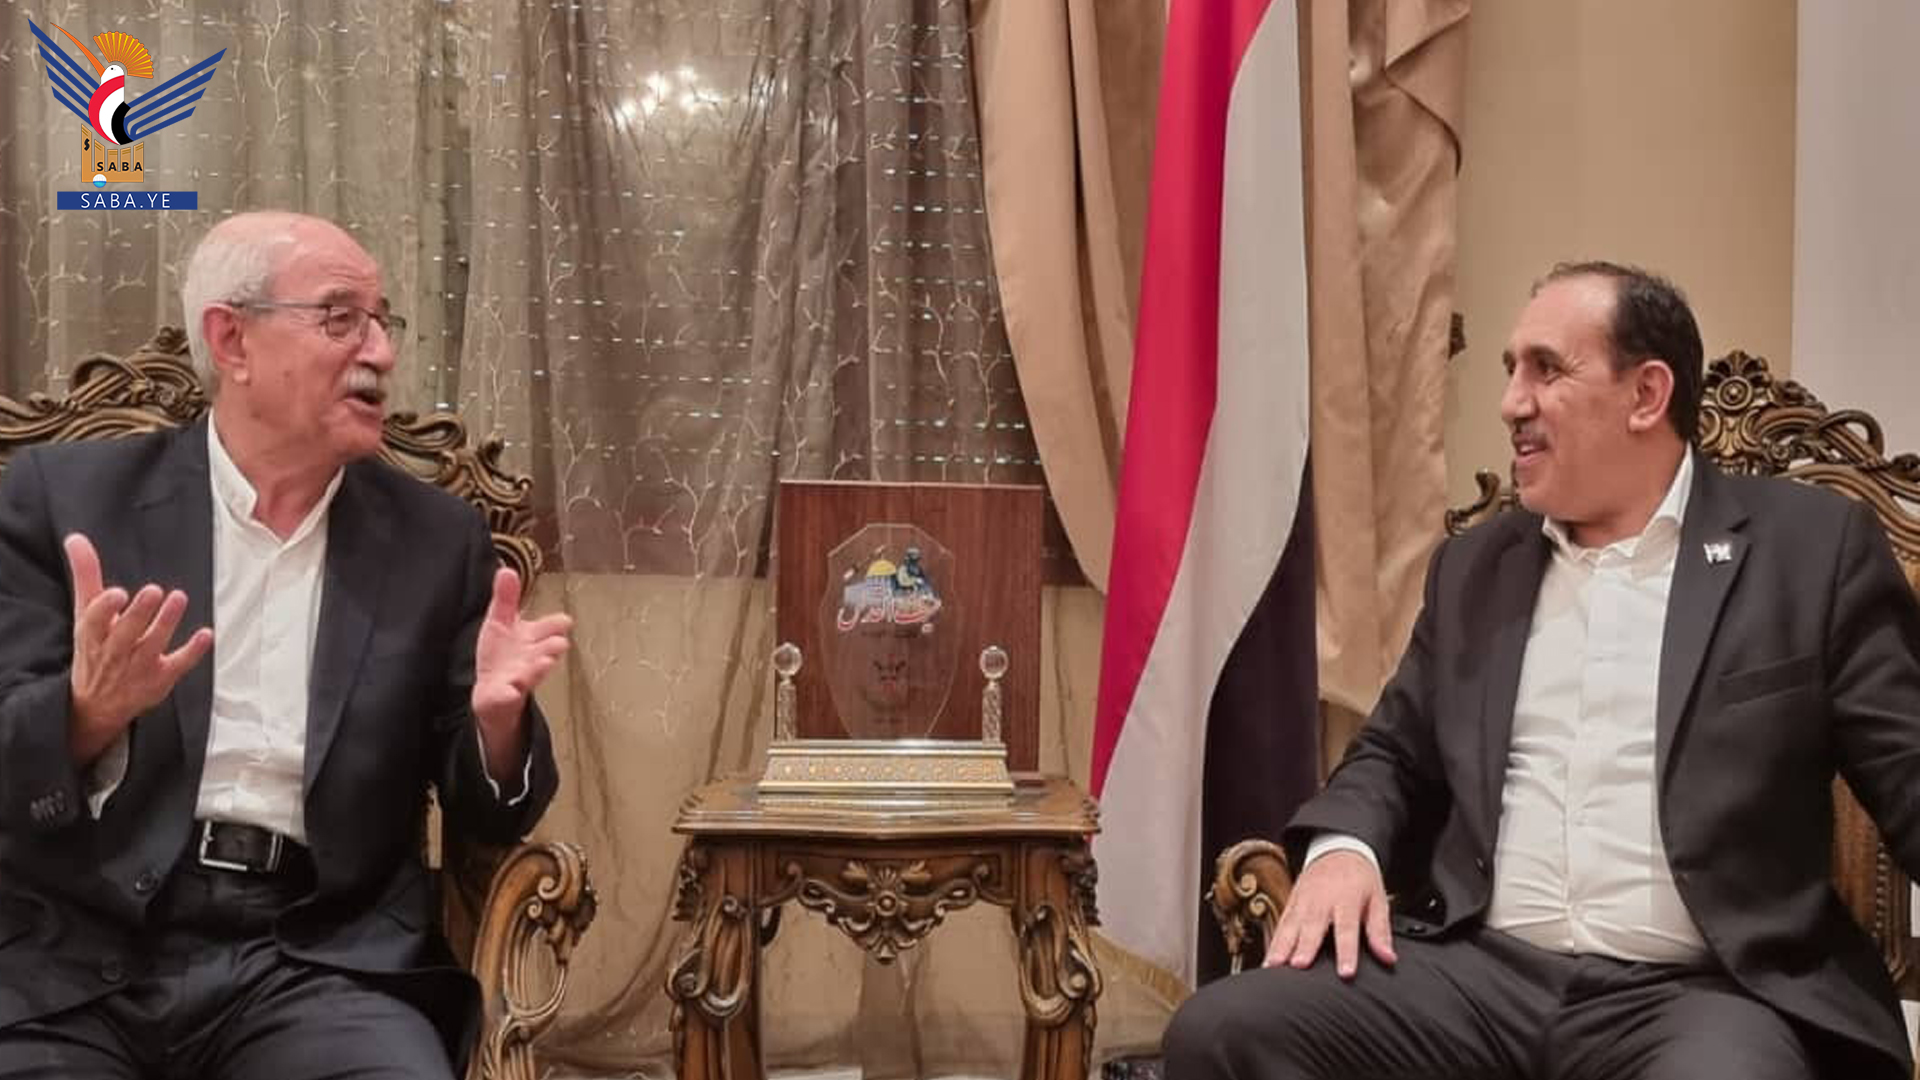   L'ambassadeur du Yémen rencontre le secrétaire général de l'Assemblée mondiale à l'appui de l'option de résistance à Damas 